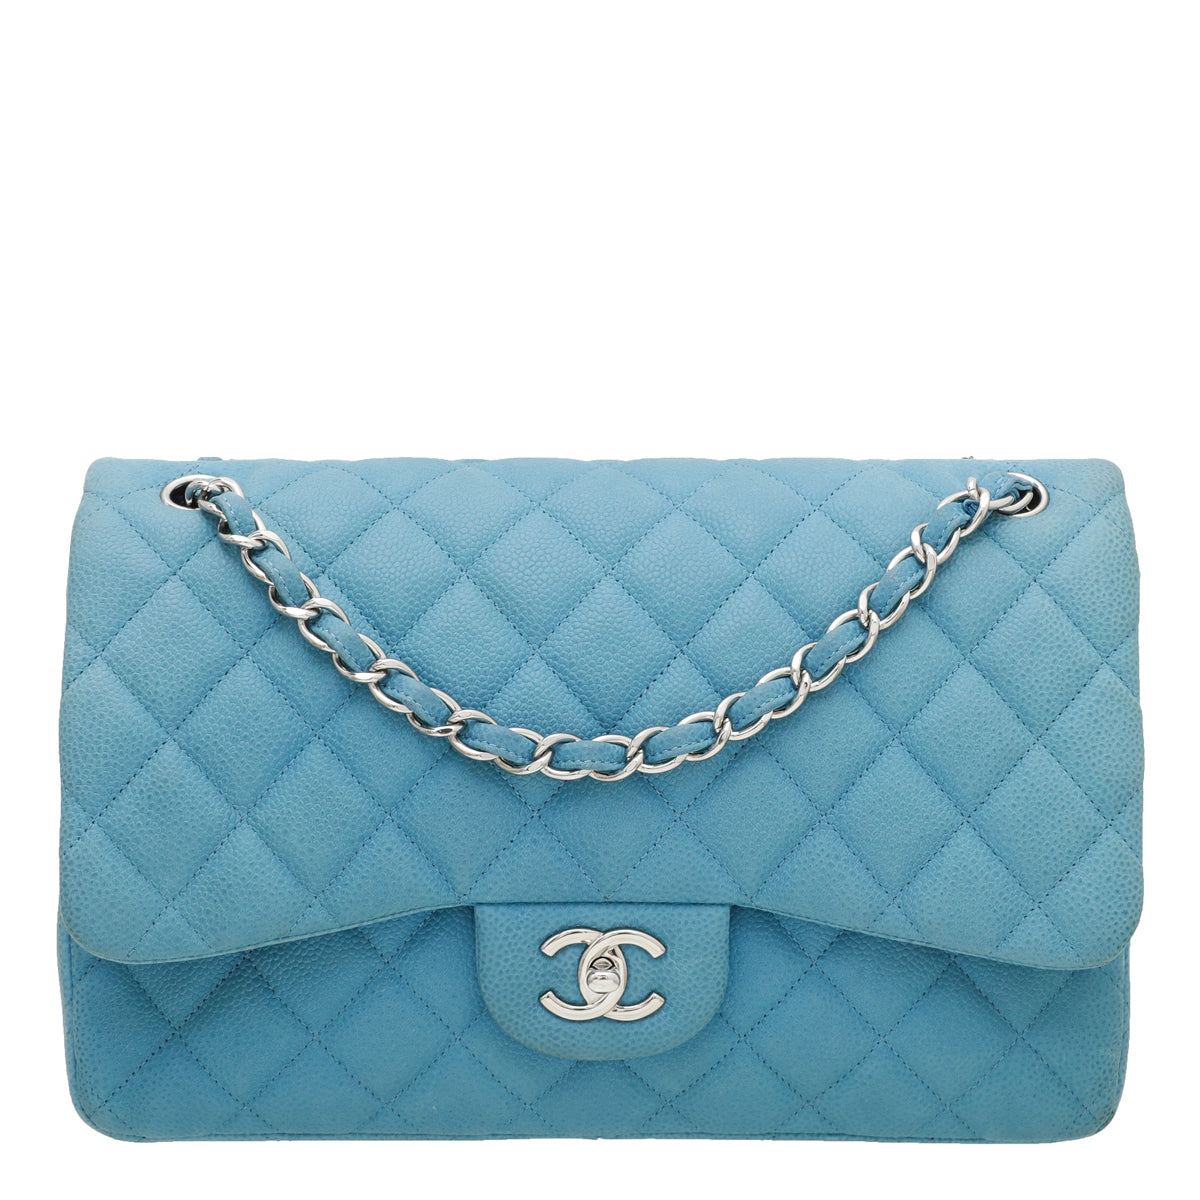 Chanel Steel Blue Double Flap Jumbo Bag